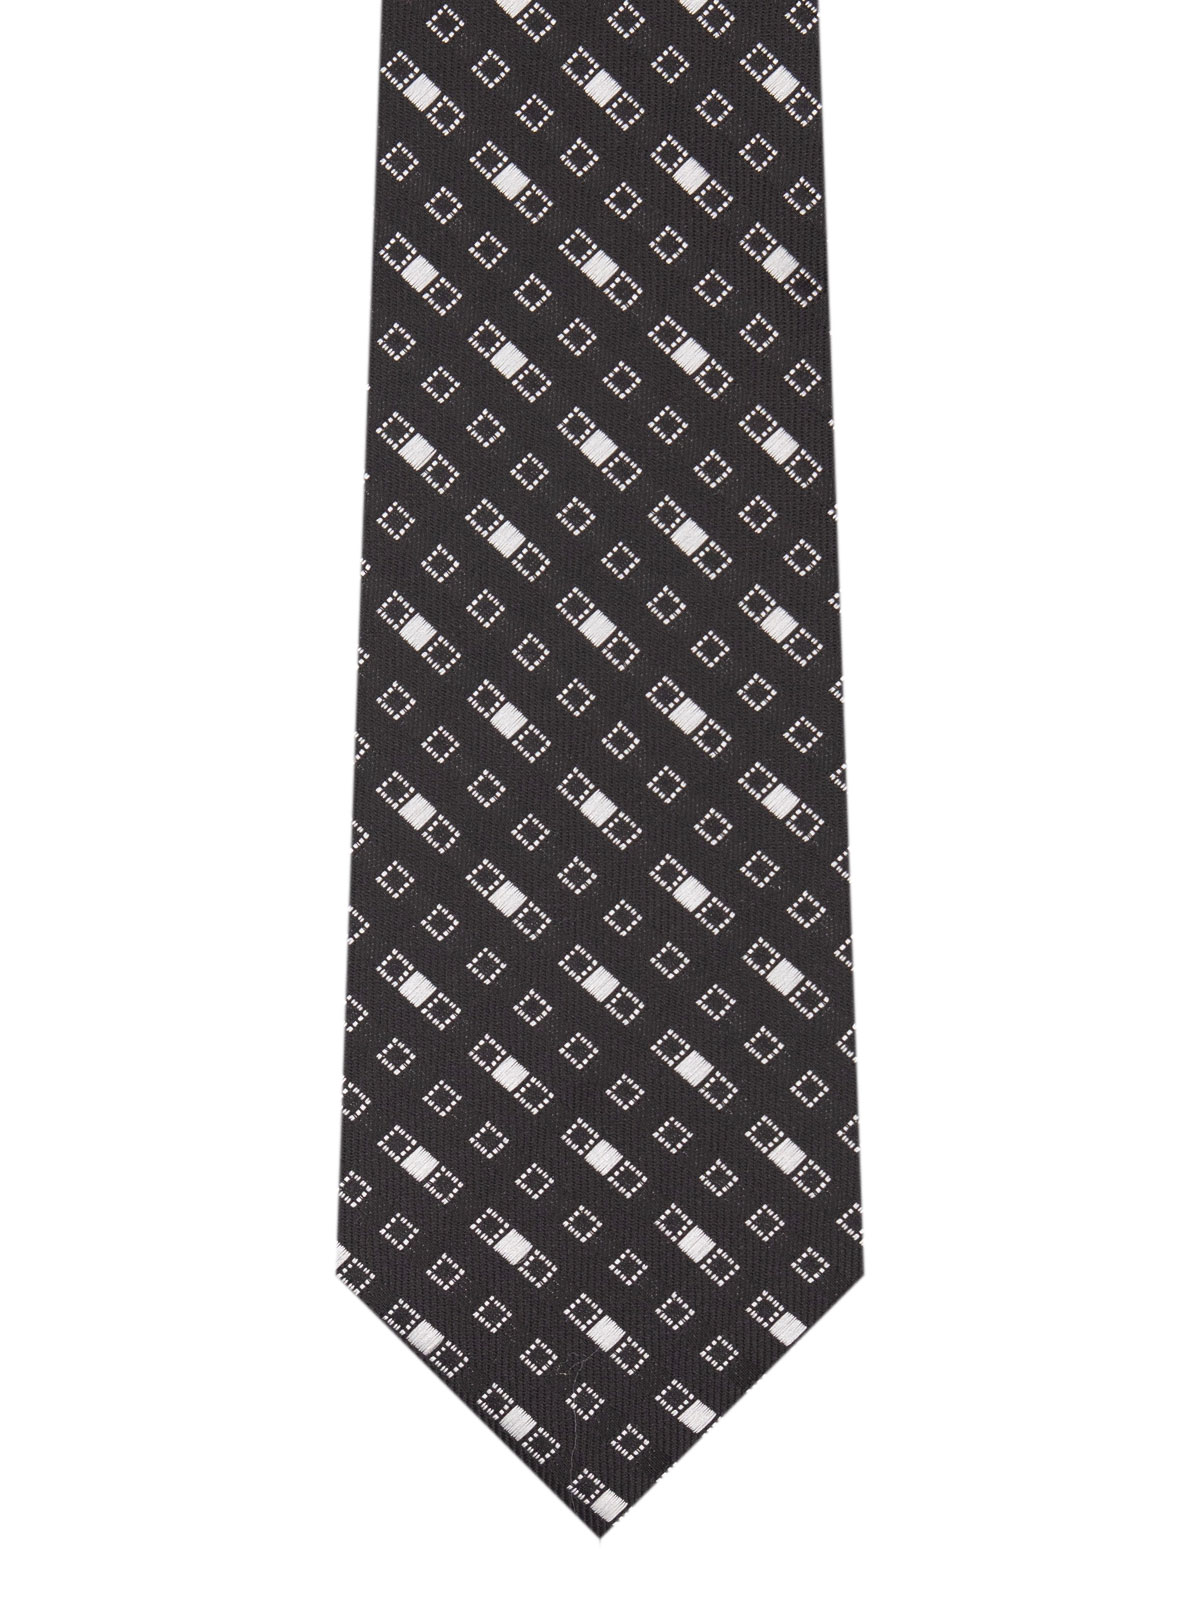 Cravată pătrată neagră - 10165 - € 14.06 img2